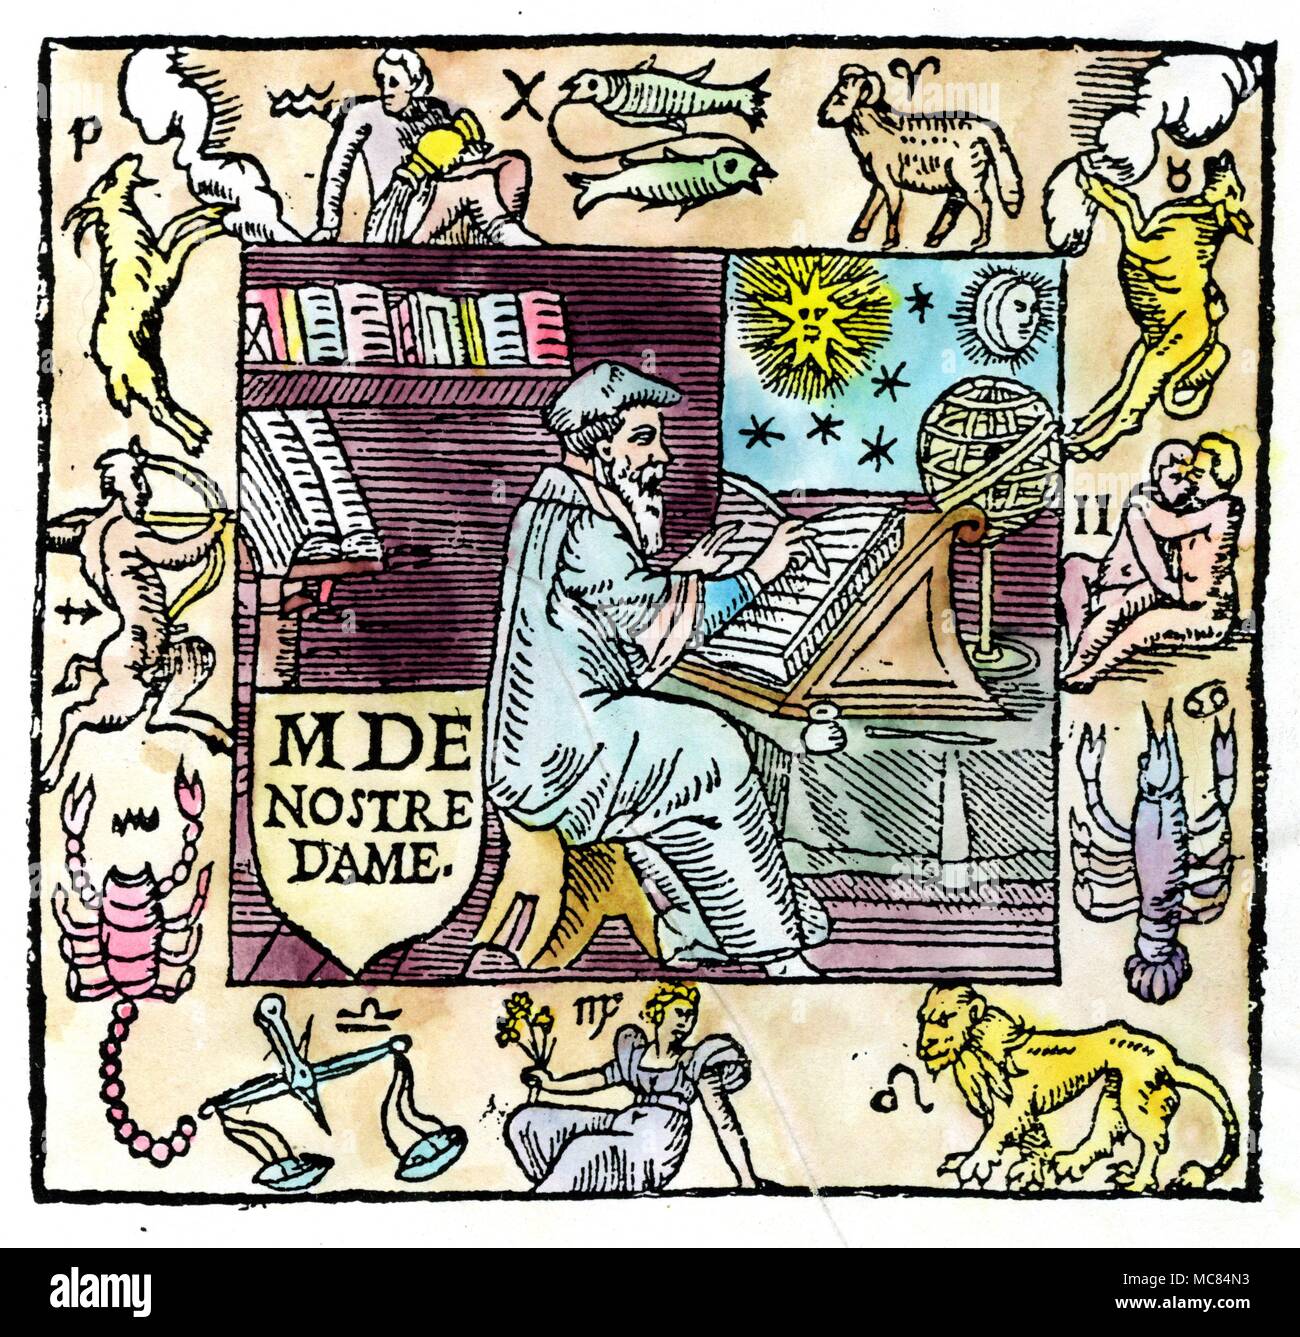 Nostradamus trabajando en su estudio, con un sonido envolvente rectangular representando los símbolos para los doce signos del zodiaco, junto con sus correspondientes sigils. Viñeta de Nostradamus' 'Les significaciones de l'Eclipse.... 1559'. Foto de stock